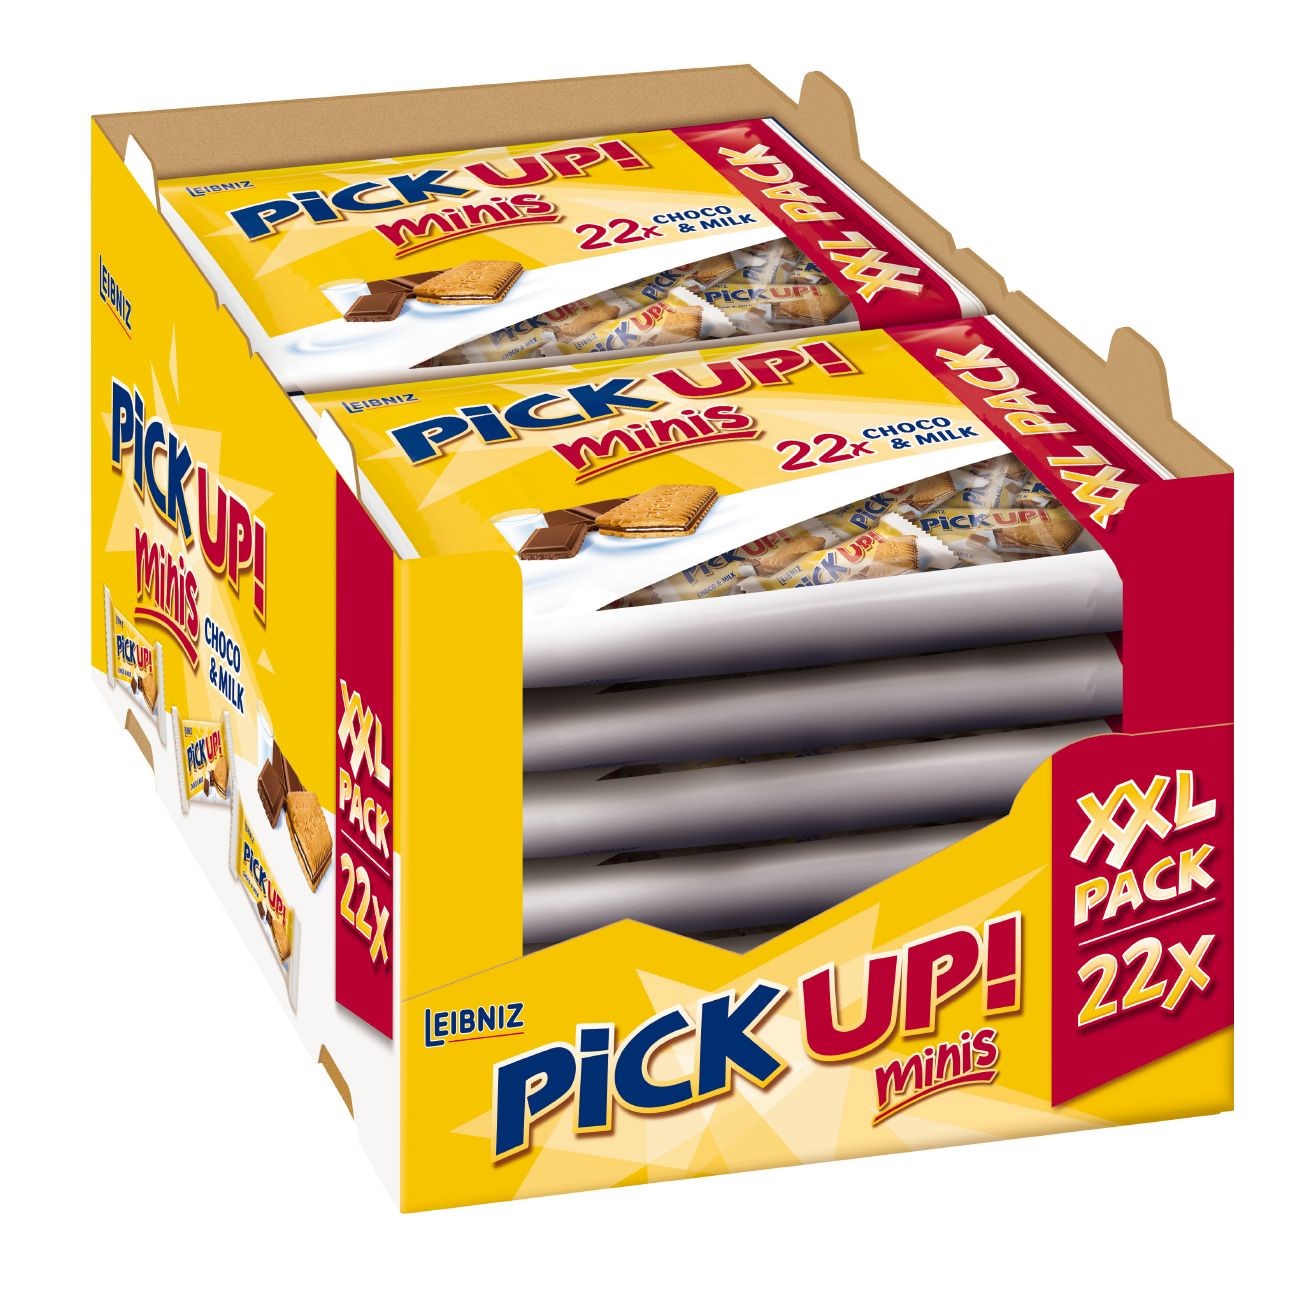 Bahlsen PiCK UP! Minis Choco&Milk Mini-Keksriegel Inhalt: 12 Packungen á 22 Stück